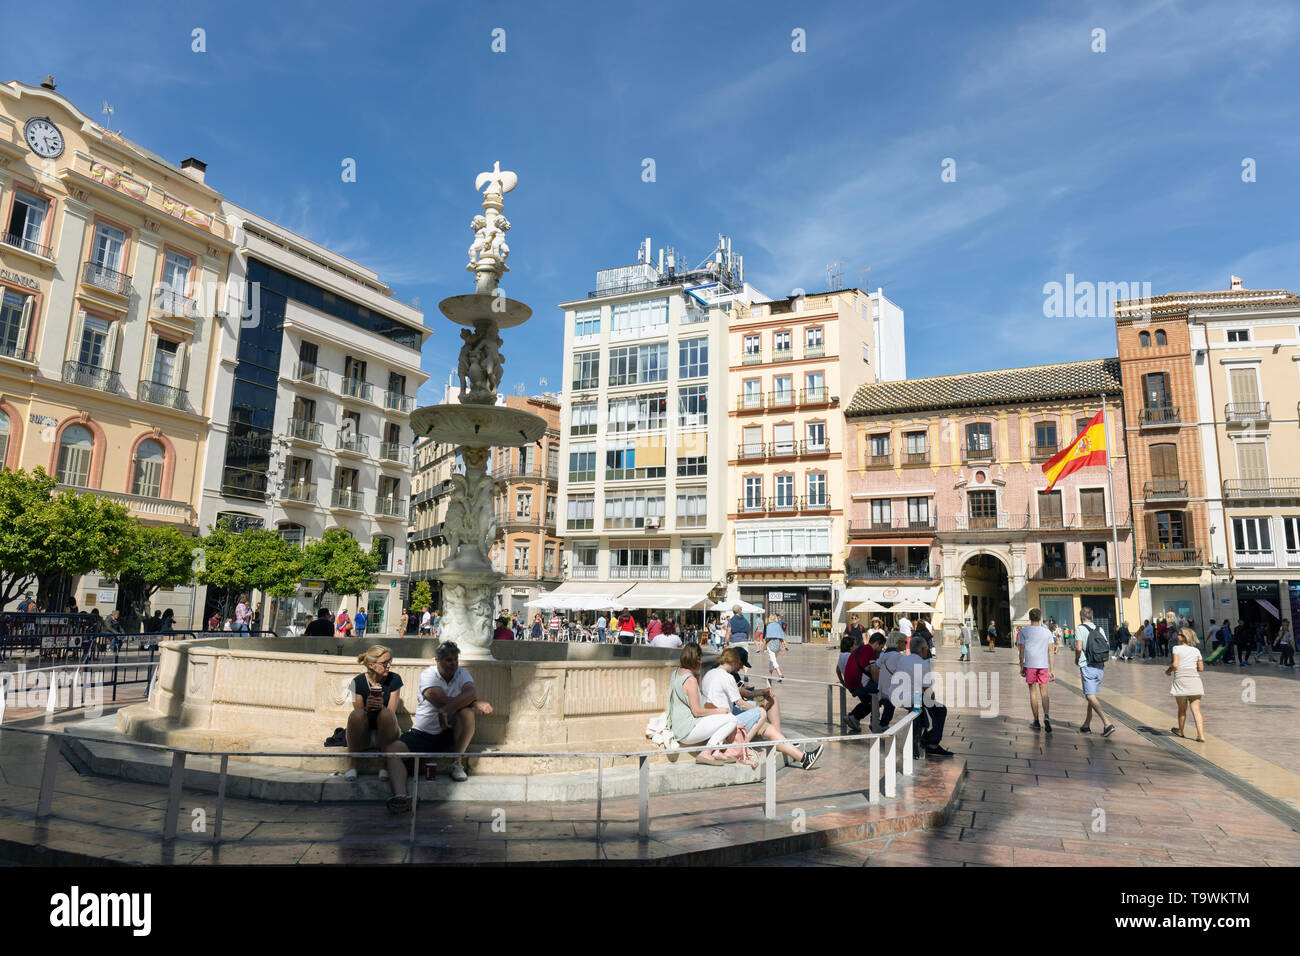 Plaza de la Constitucion, Constitution Square, Malaga, Costa del Sol, Malaga Province, Andalusia, southern Spain.  The fountain is the Fuente de Genov Stock Photo